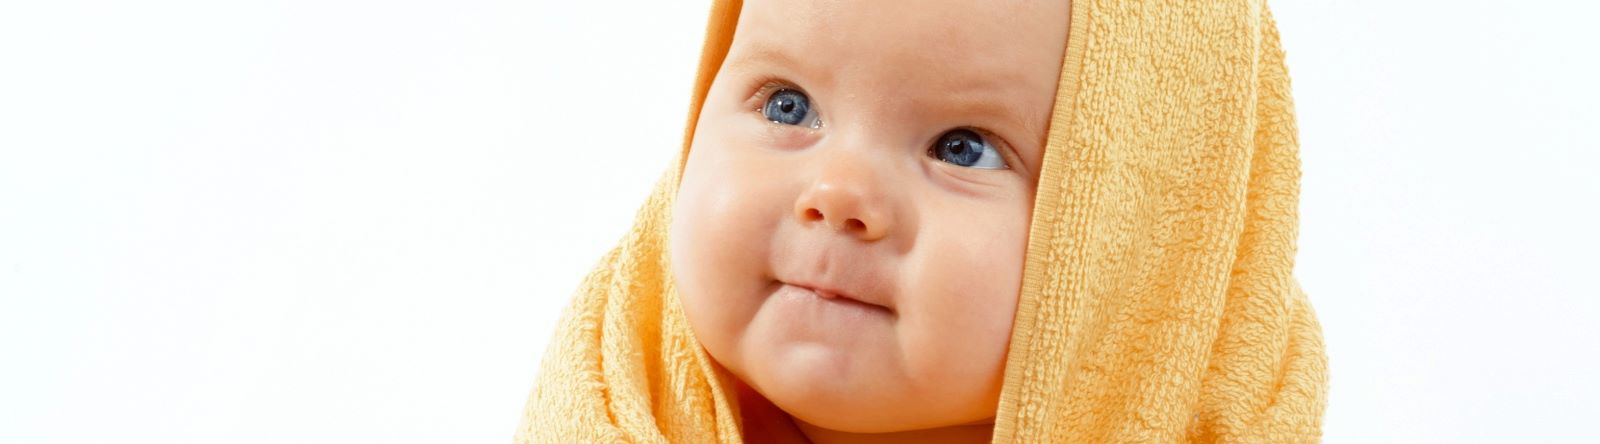 Lavador Nasal Seringa você encontra em  - Baby Lage  encontre mamadeiras, chupetas e enxoval de bebê em